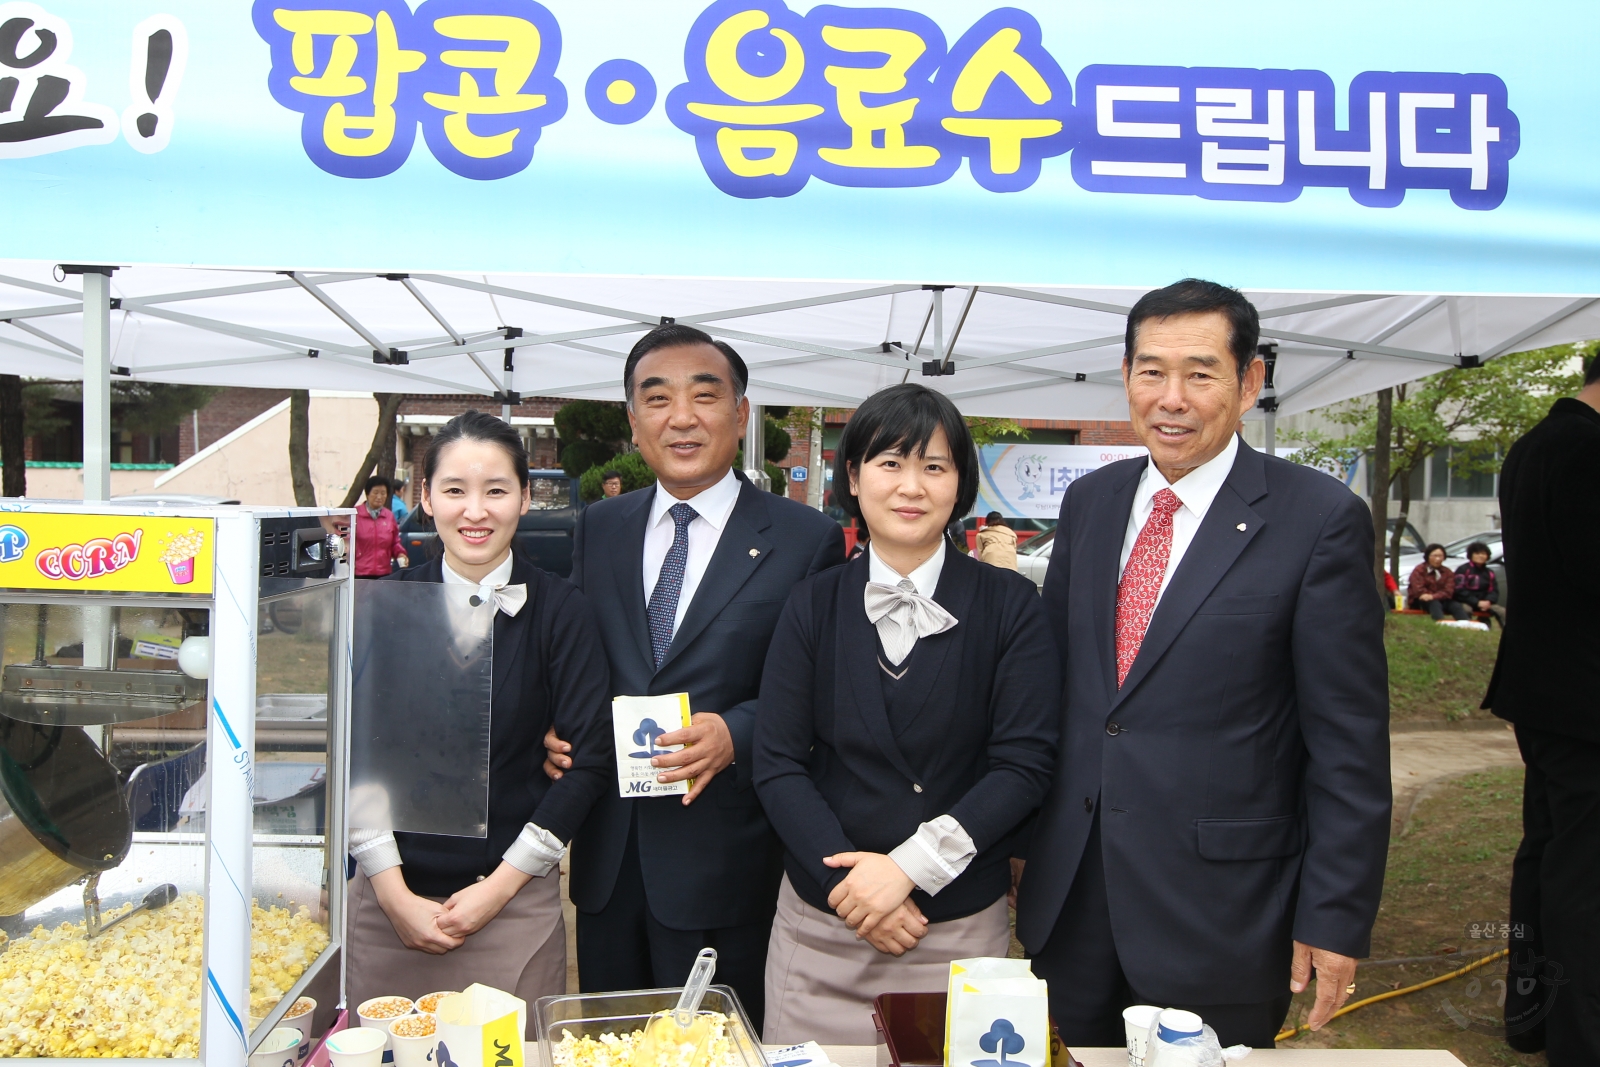 2013 신정5동 베스트 행정 서비스의 날 의 사진